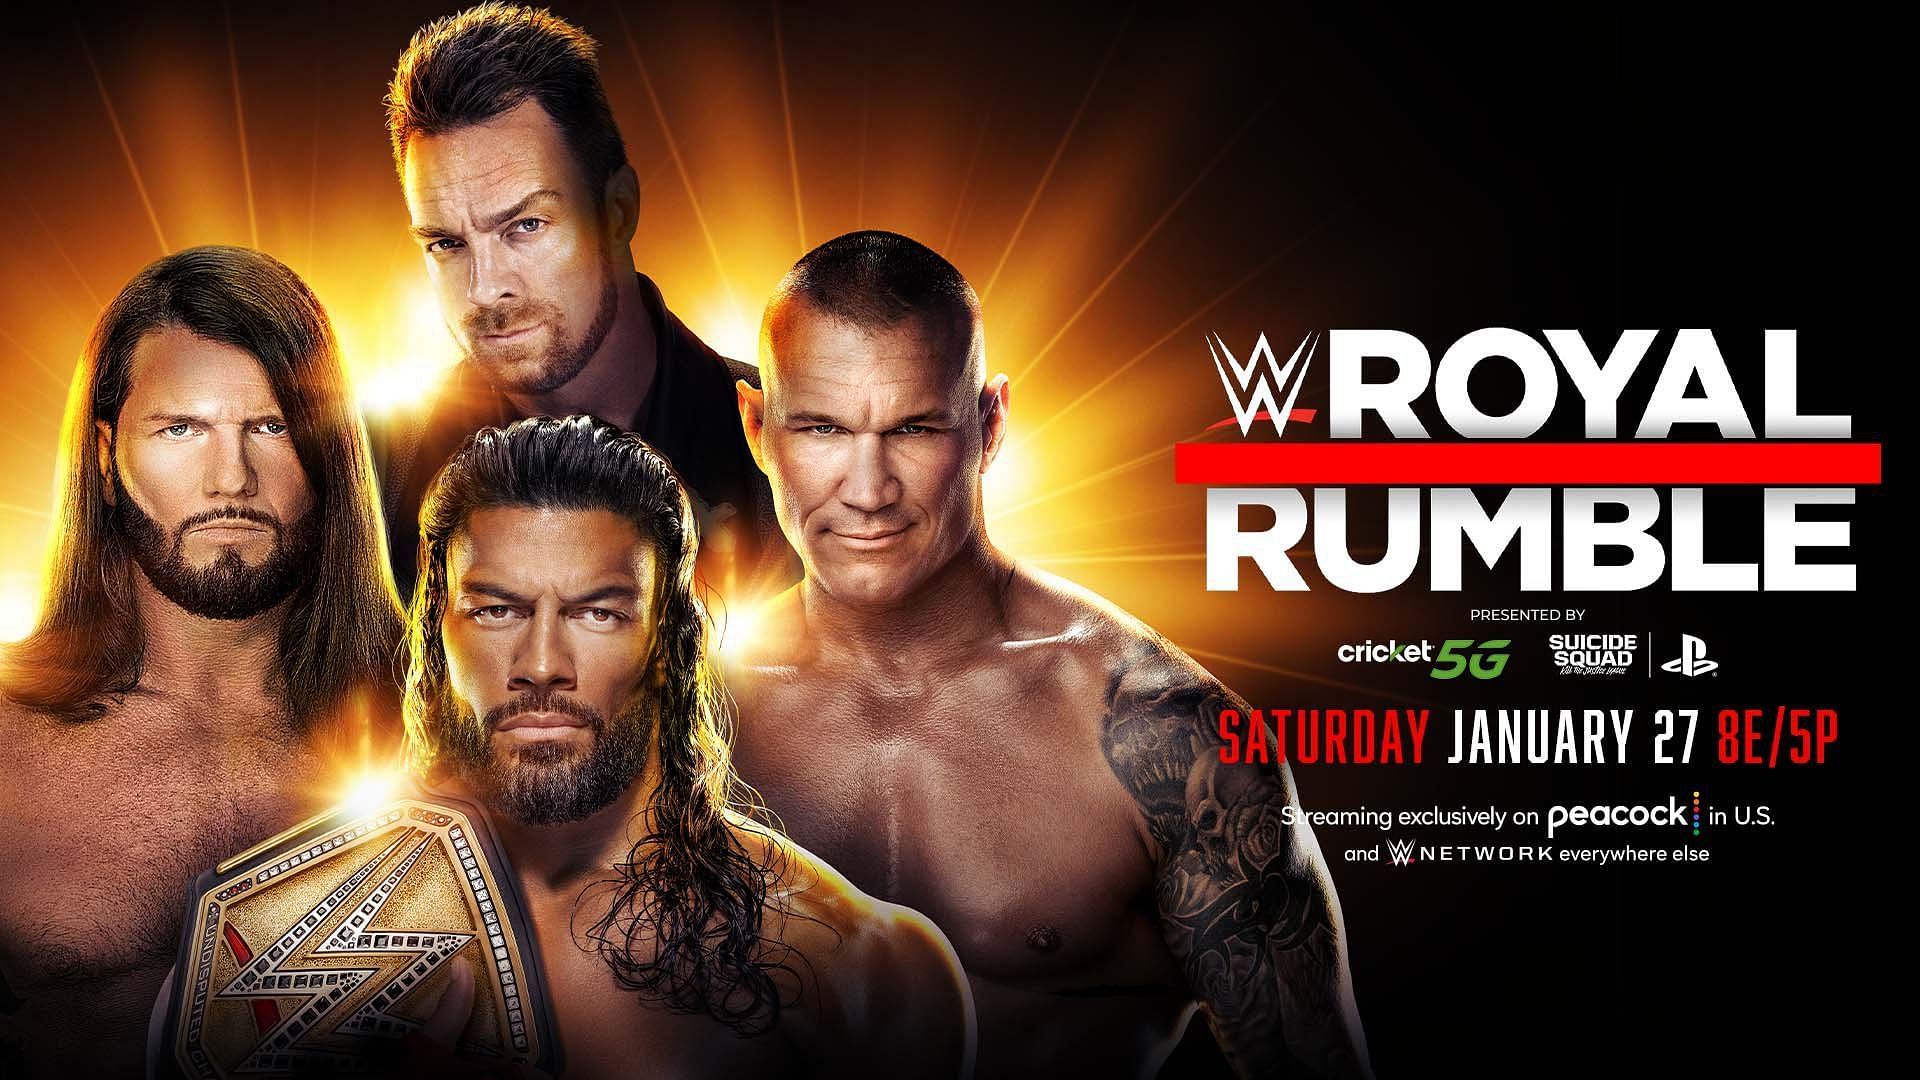 4 possible finishes for Roman Reigns vs AJ Styles vs LA Knight vs Randy